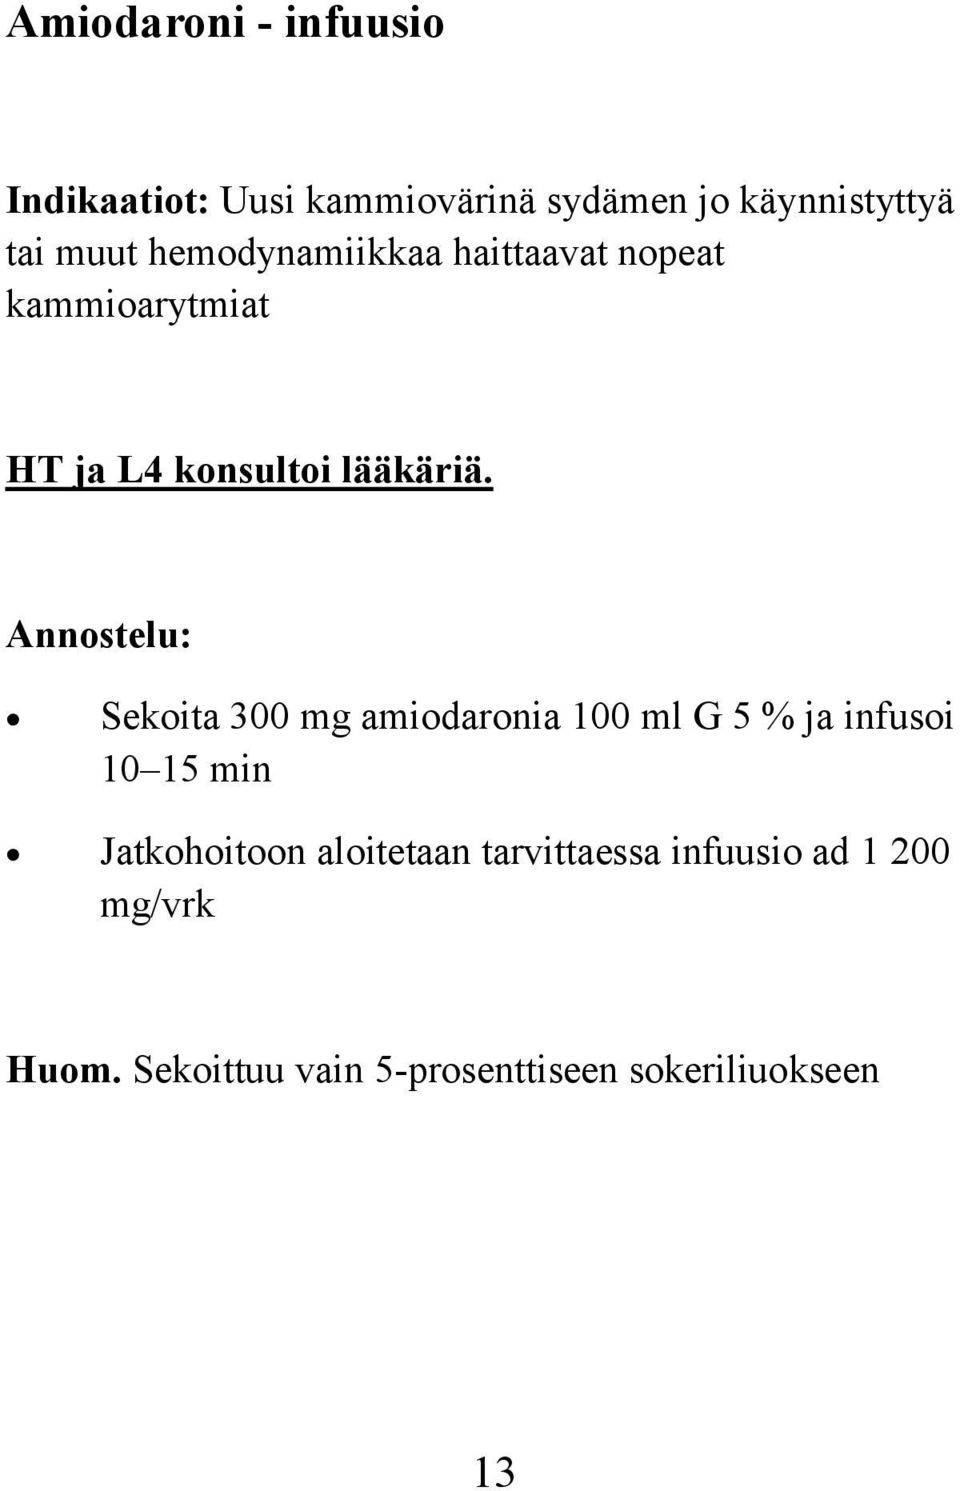 Annostelu: Sekoita 300 mg amiodaronia 100 ml G 5 % ja infusoi 10 15 min Jatkohoitoon